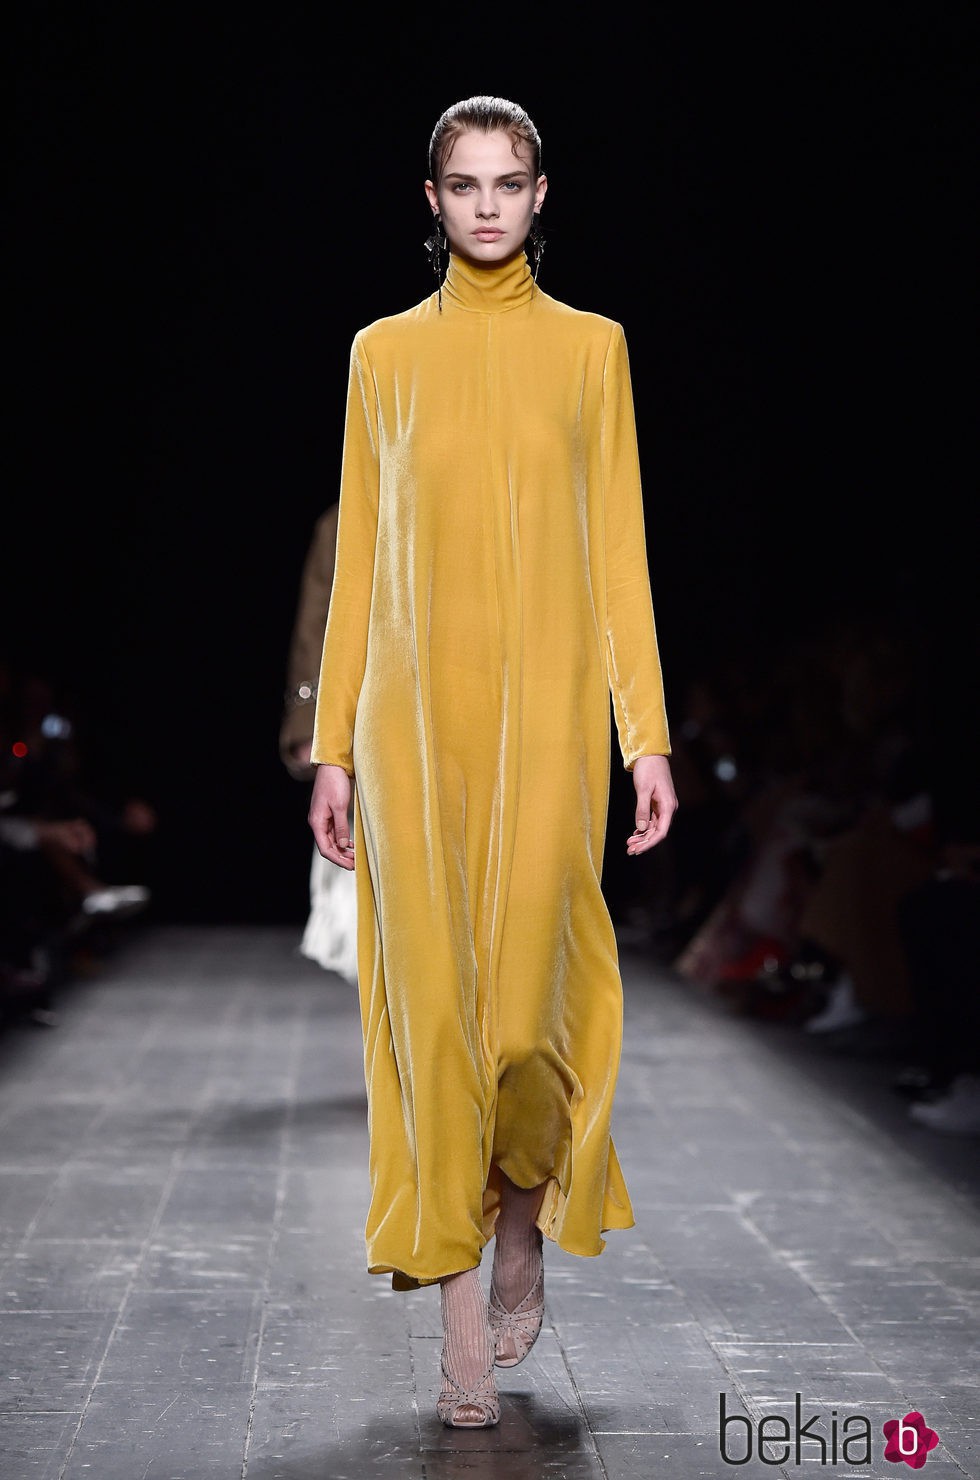 Vestido amarillo vaporoso de la coleccion otoño/invierno de Valentino para la Paris Fashion Week 2016/17